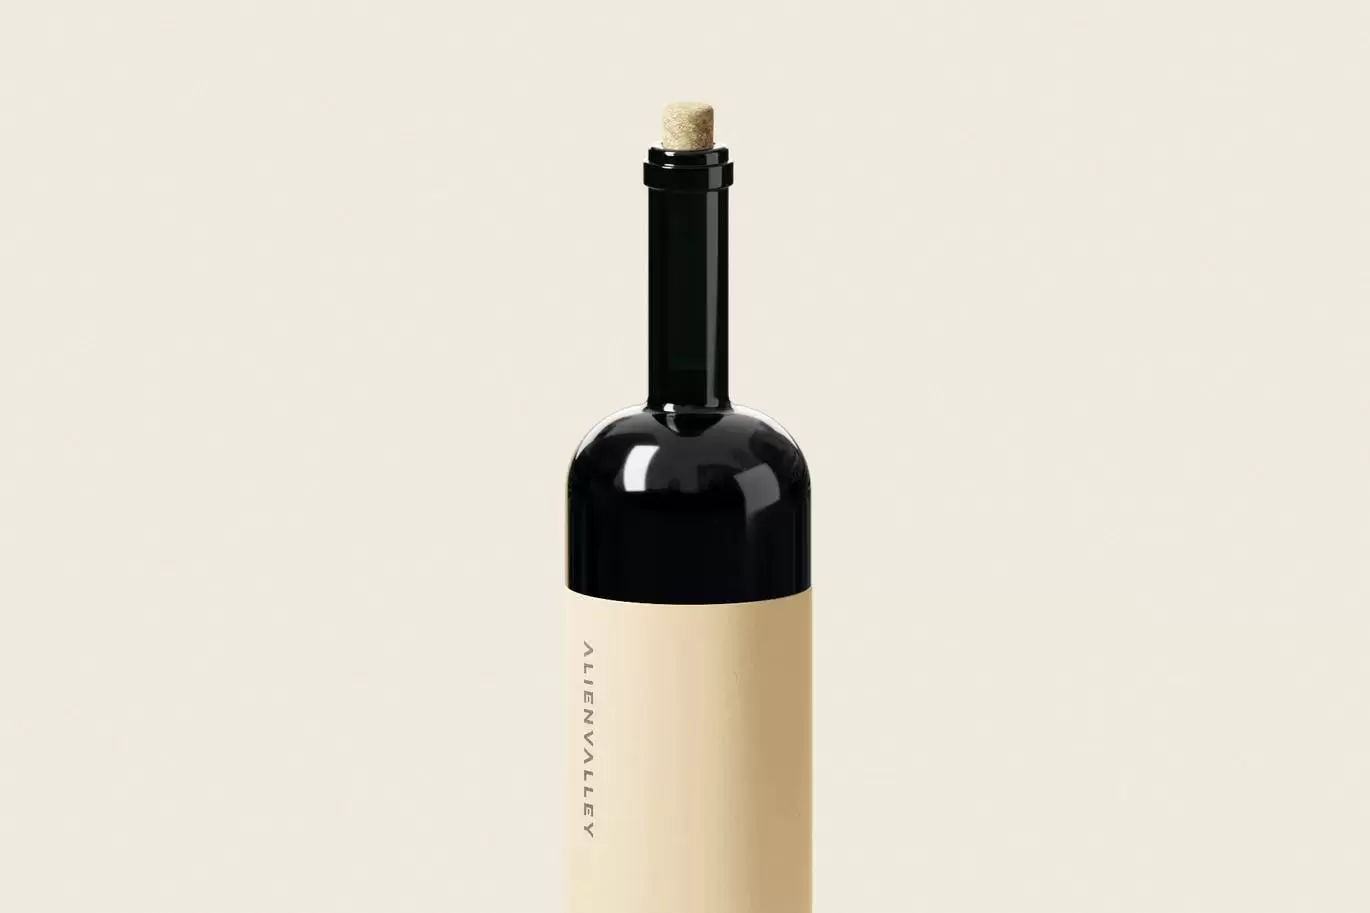 时尚高端专业的红酒葡萄酒洋酒酒瓶包装设计VI样机展示模型mockups免费下载插图3